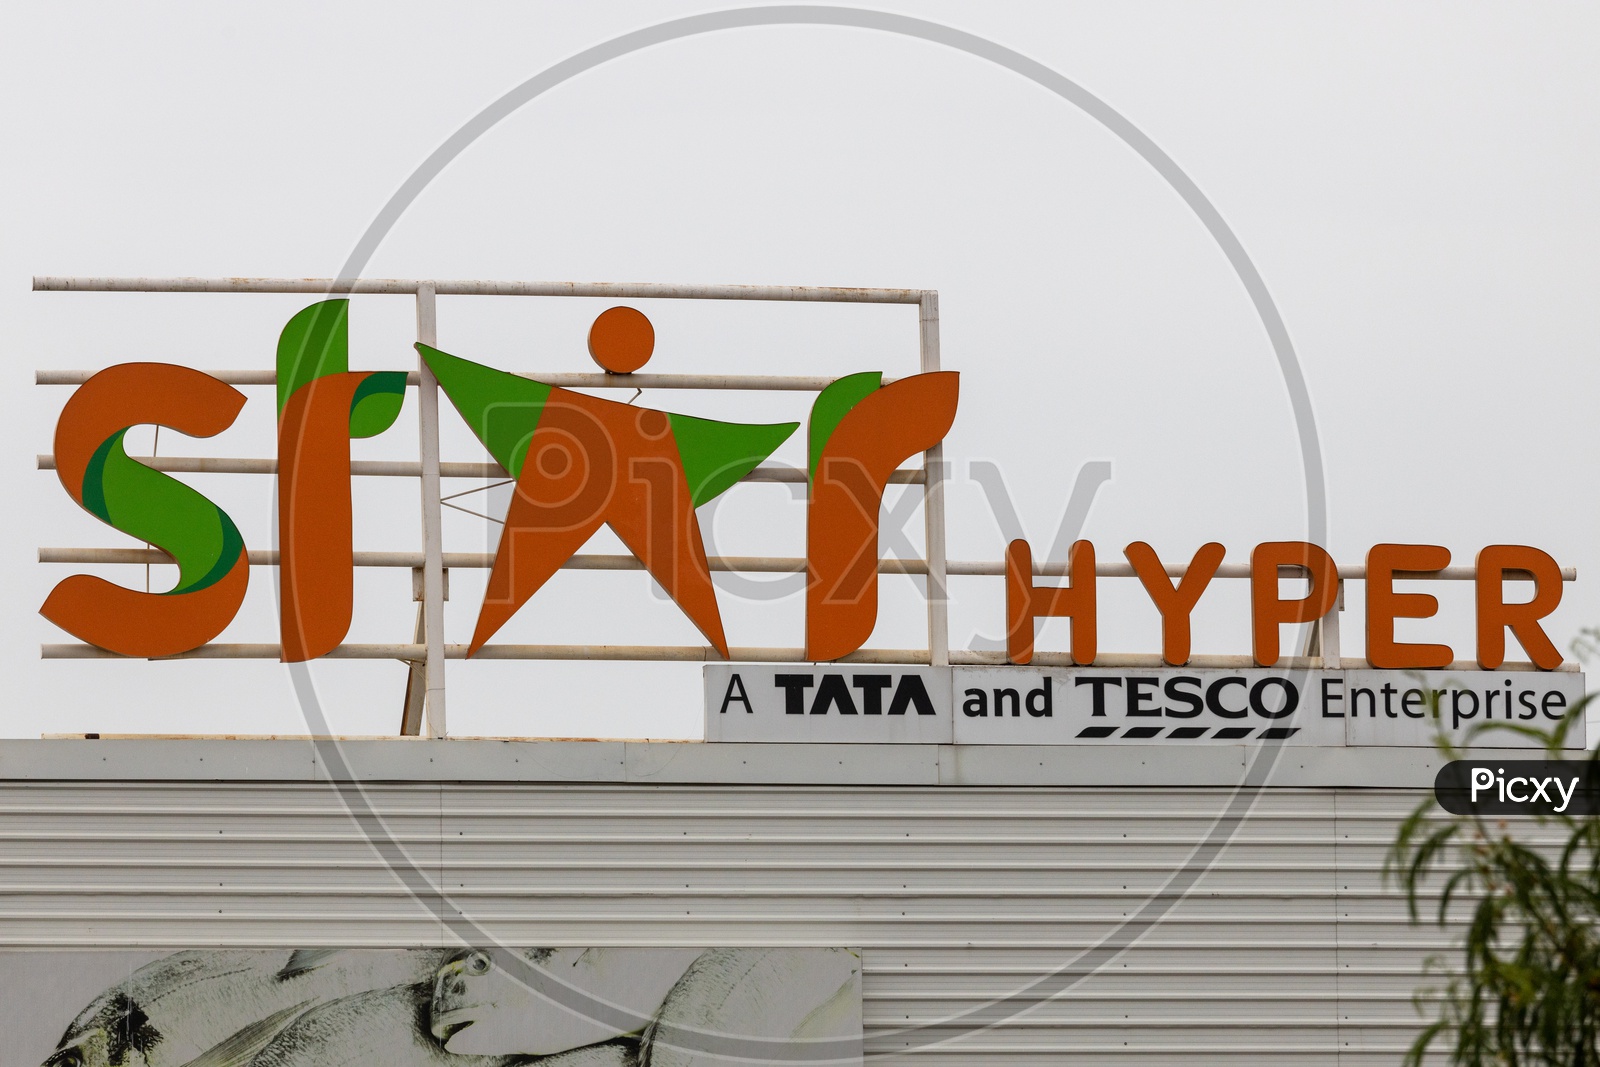 Star Hyper, TATA TESCO Retail chain store